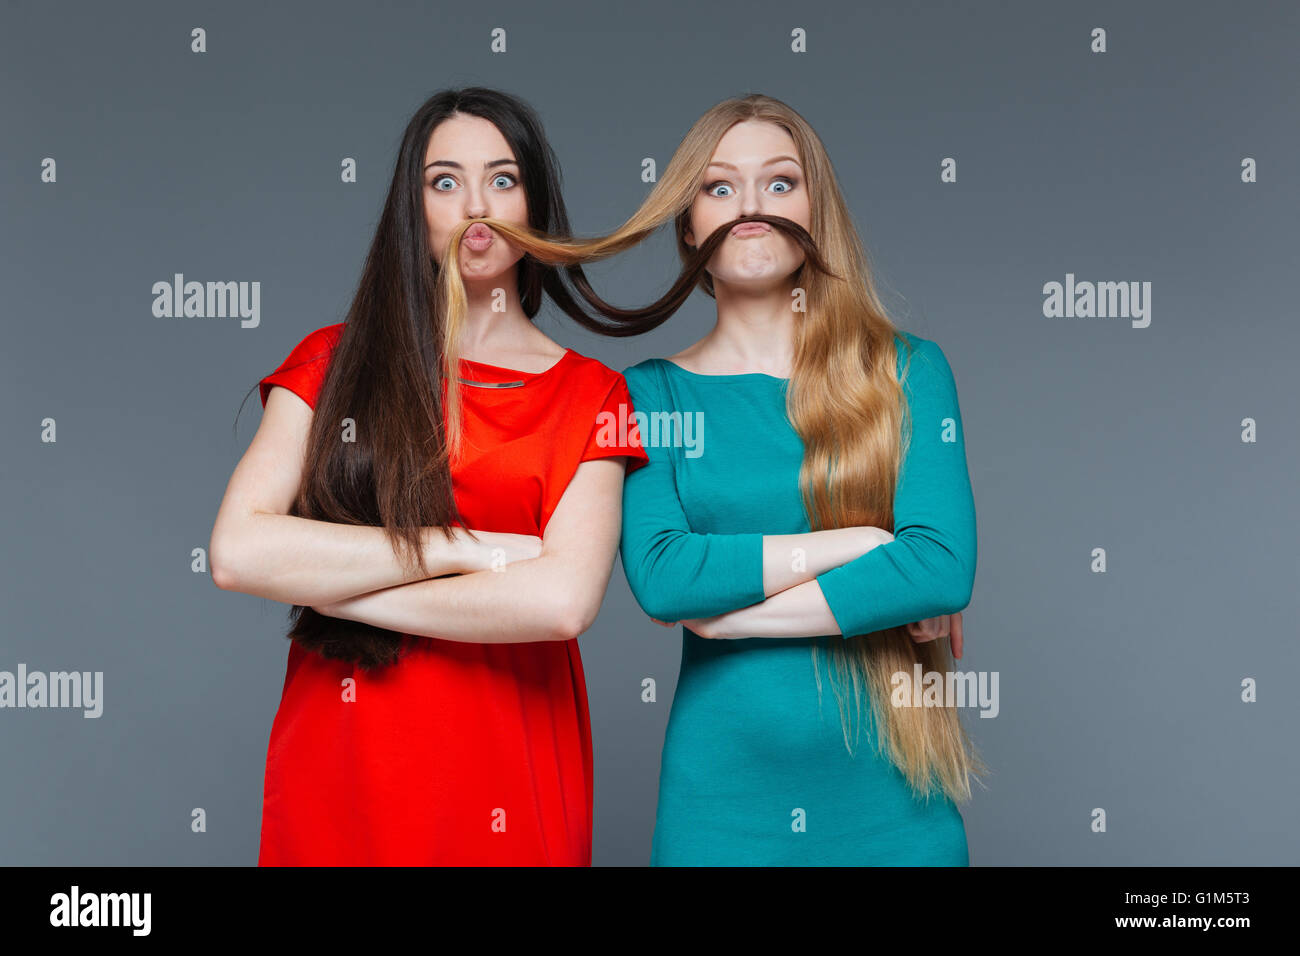 Funny Girls deux décisions moustache avec leurs cheveux sur fond gris Banque D'Images